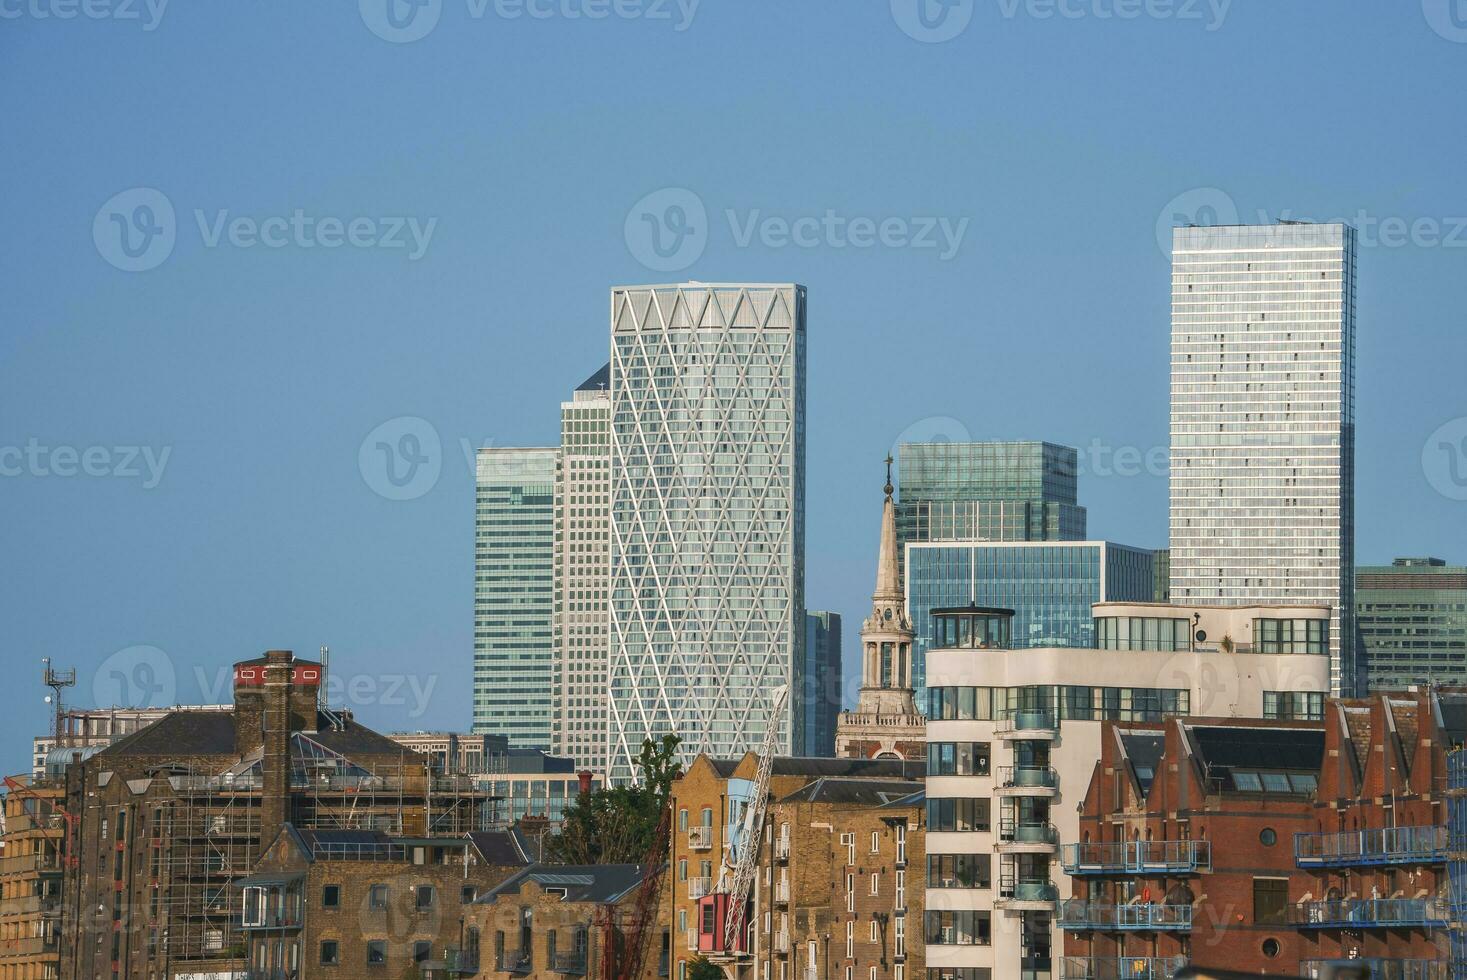 bostads- och företags- byggnader med blå himmel bakgrund foto